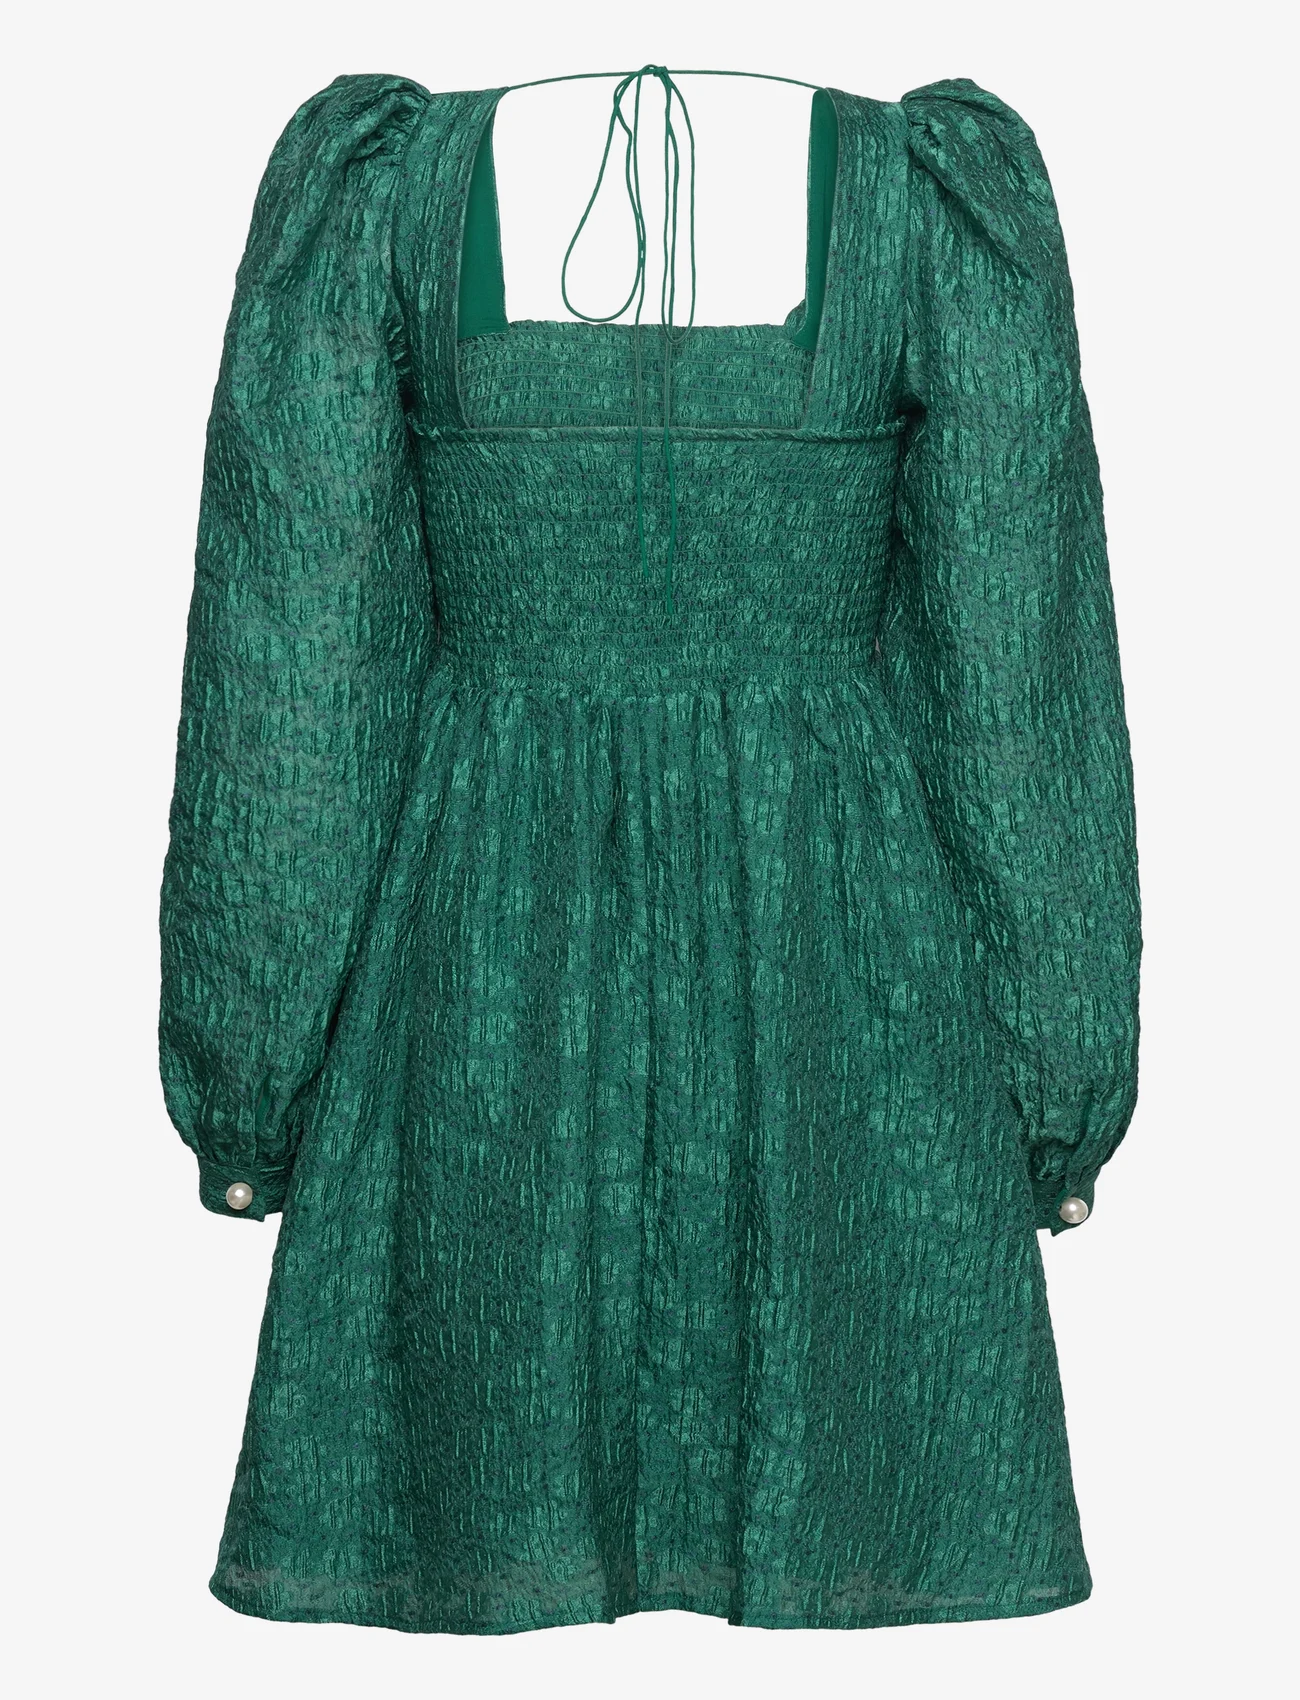 Custommade - Jenny - odzież imprezowa w cenach outletowych - 336 posy green - 1